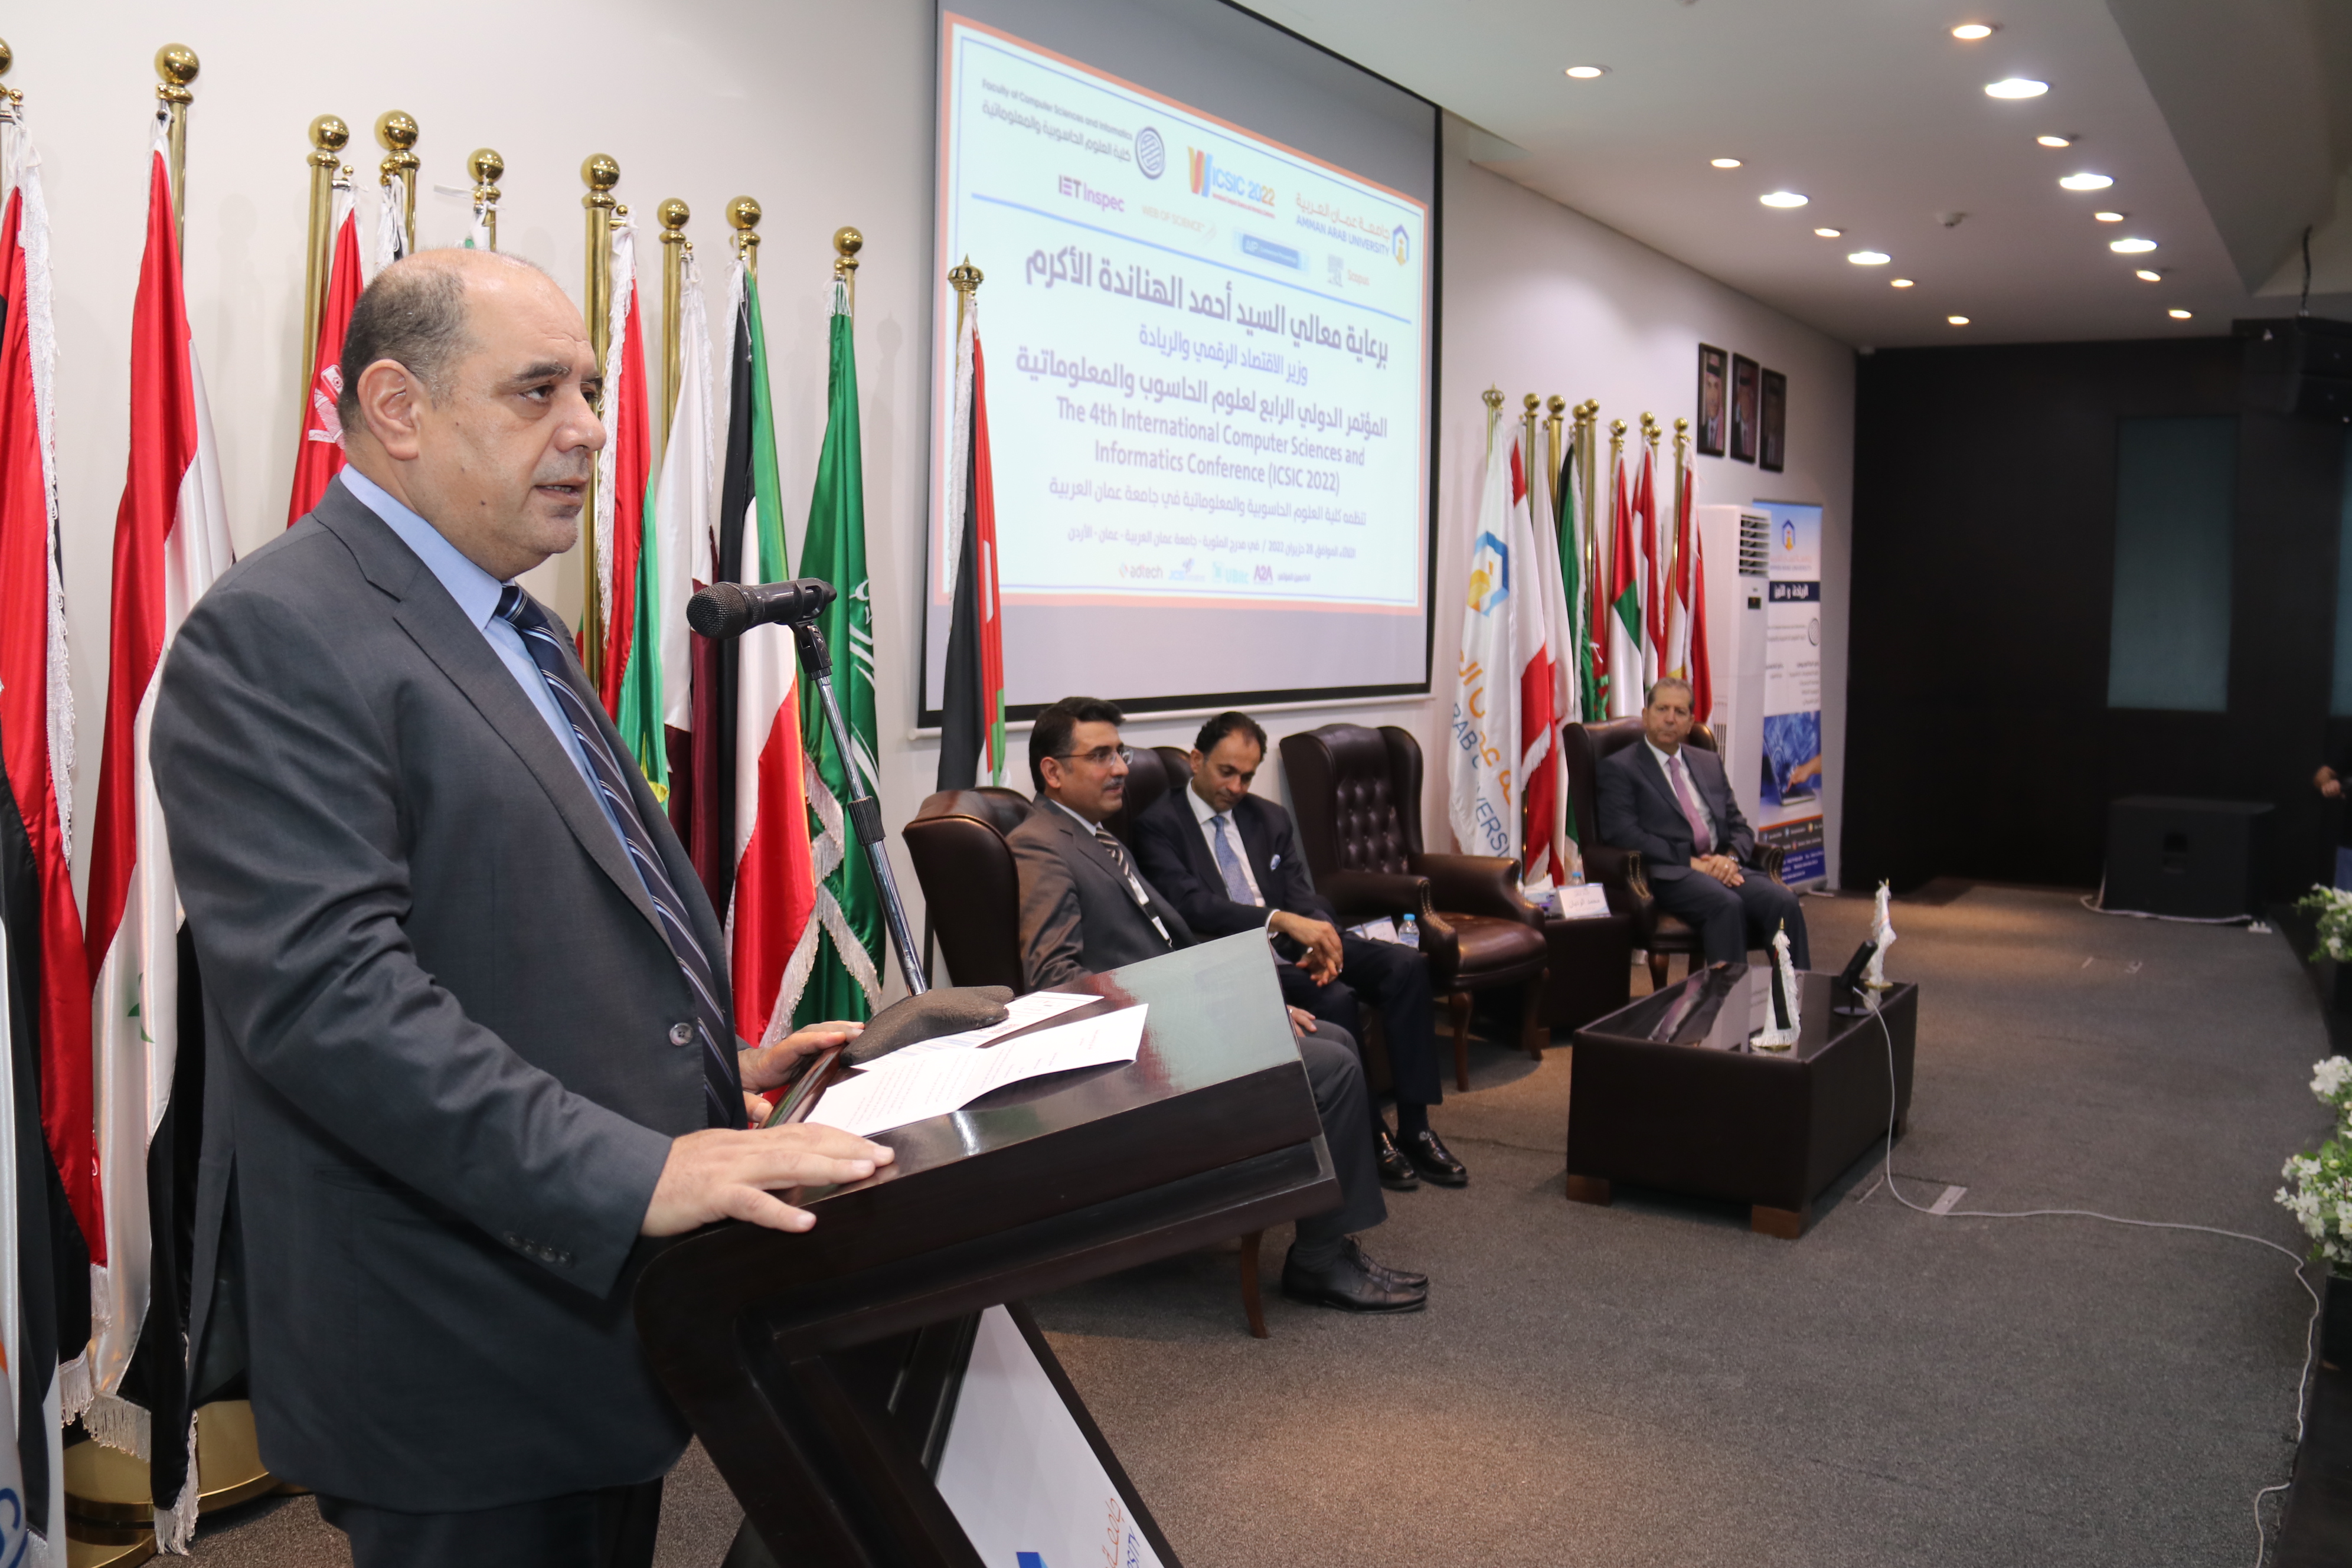 الهناندة يرعى افتتاح فعاليات المؤتمر الدولي الرابع في العلوم الحاسوبية والمعلوماتية في "عمان العربية"13